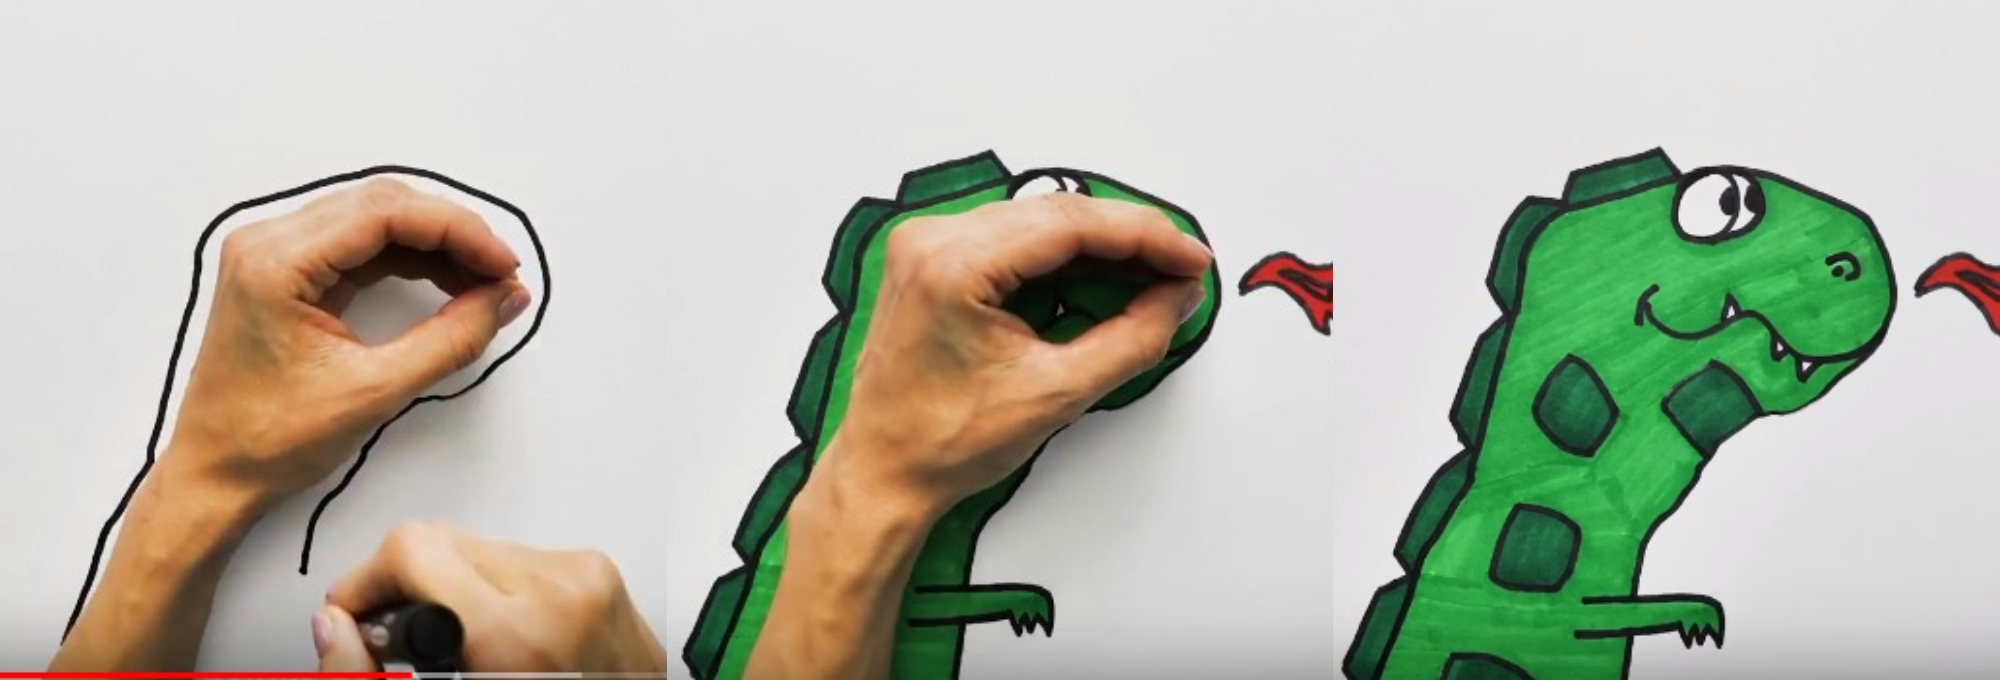 Змея из пальцев рук рисунок